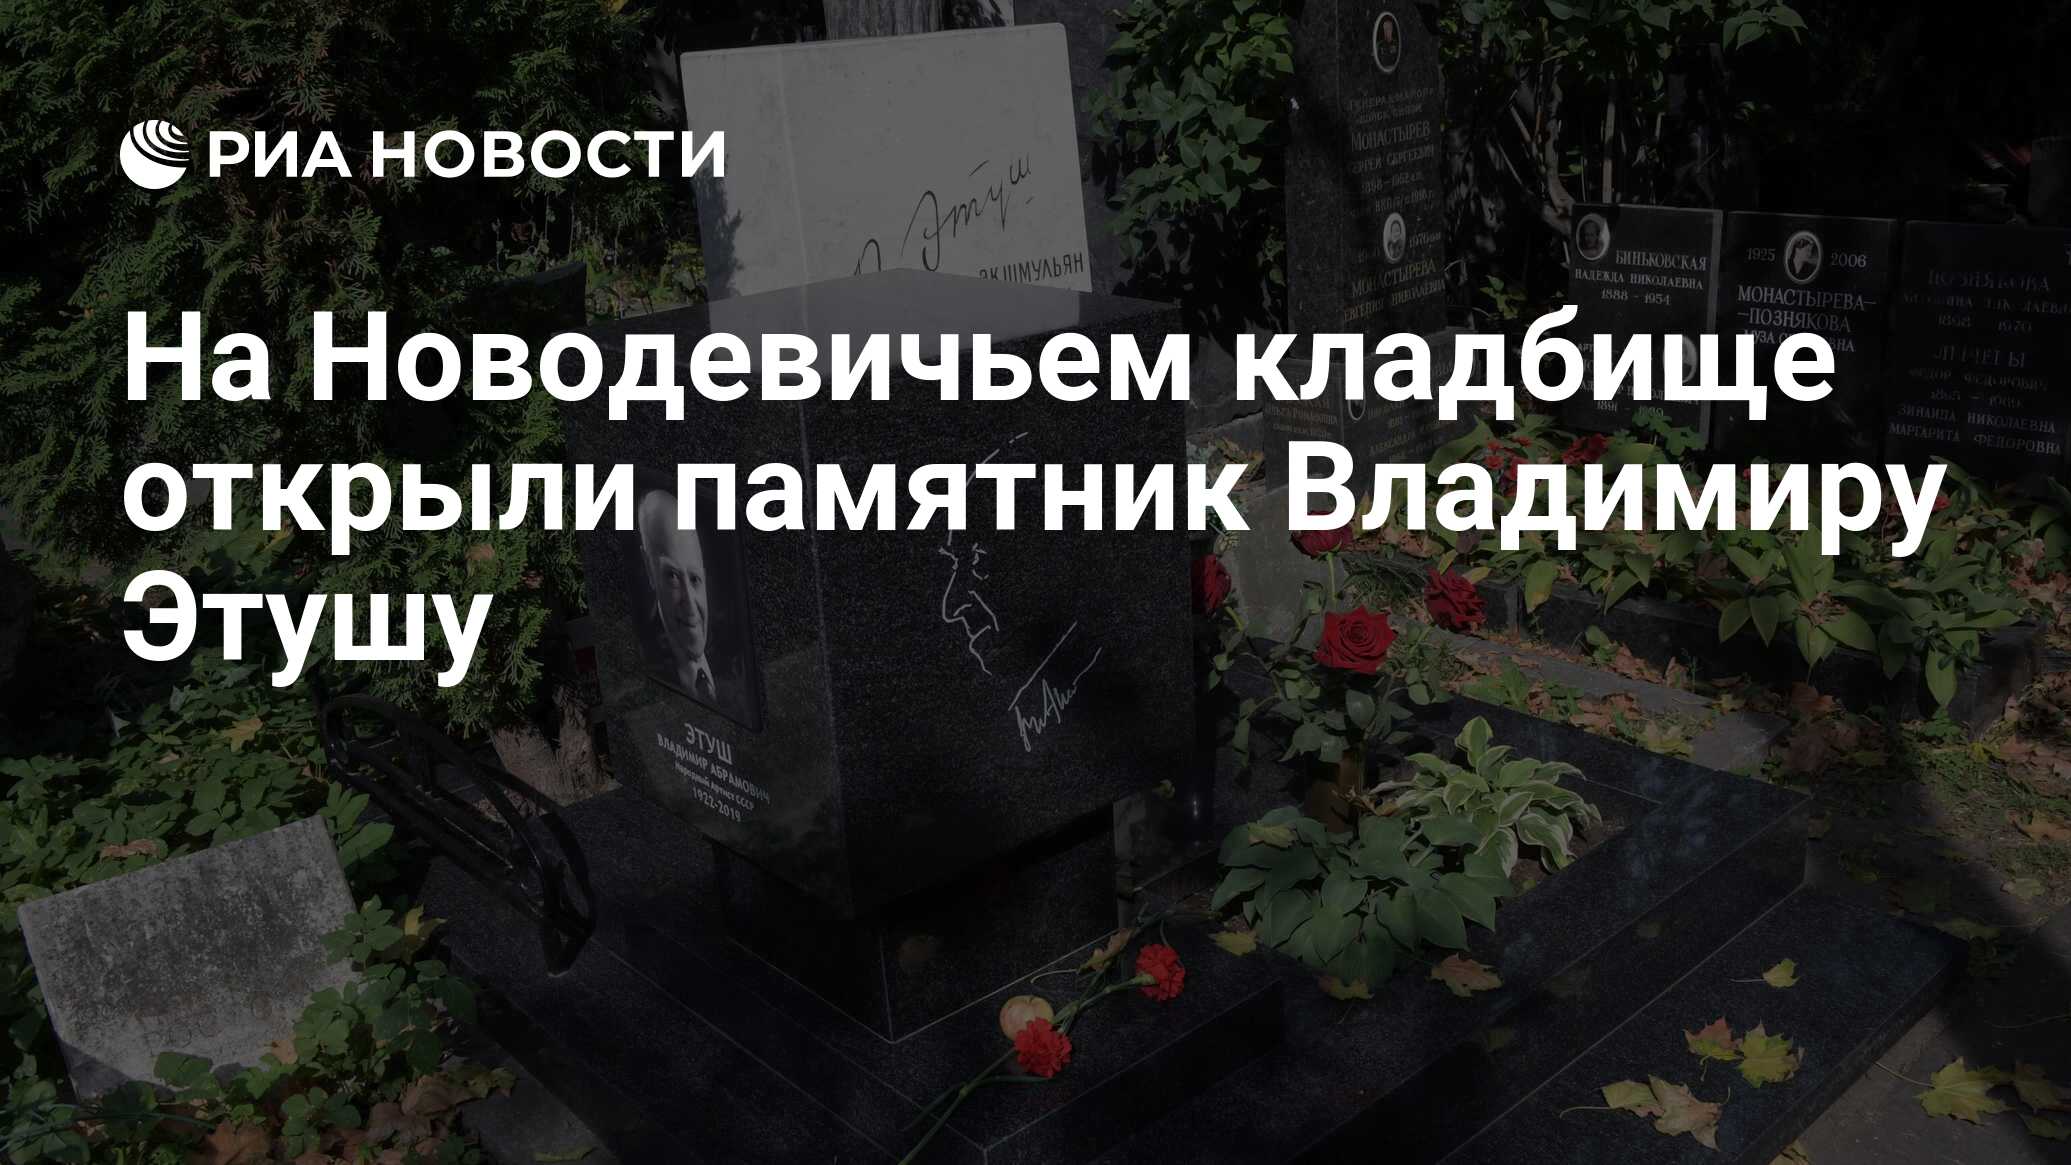 Памятник Владимиру Этушу на Новодевичьем кладбище